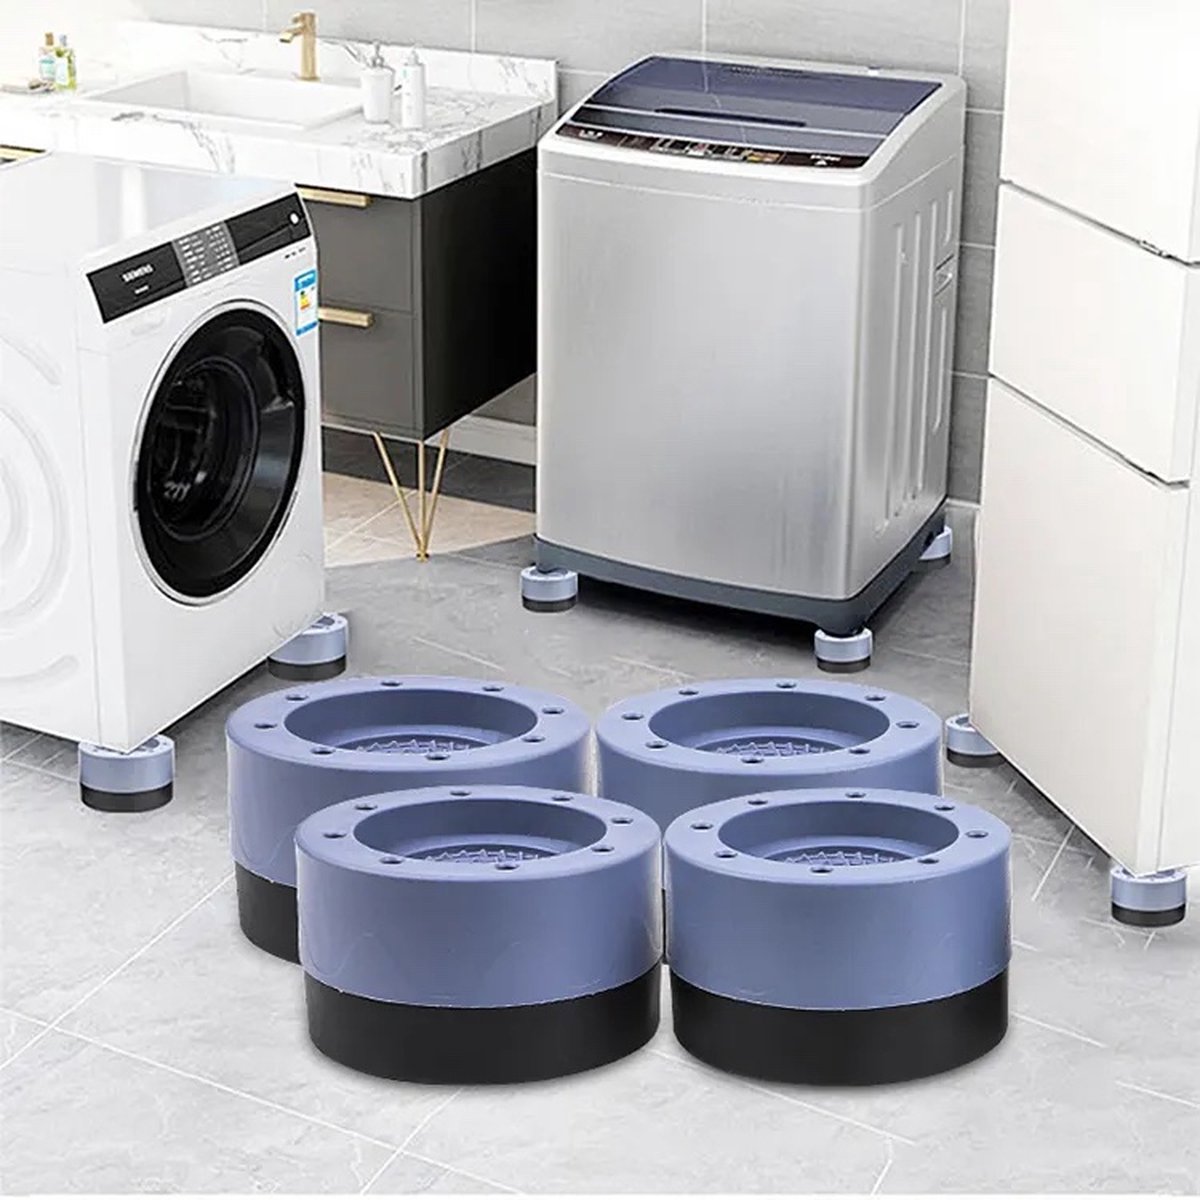 Trillingsdempers Wasmachine - 4 Stuks - Wasmachine Verhoger - Extra Dik - Wasmachine Dempers - Stapelbaar - Droger - Vaatwasser - Merkloos